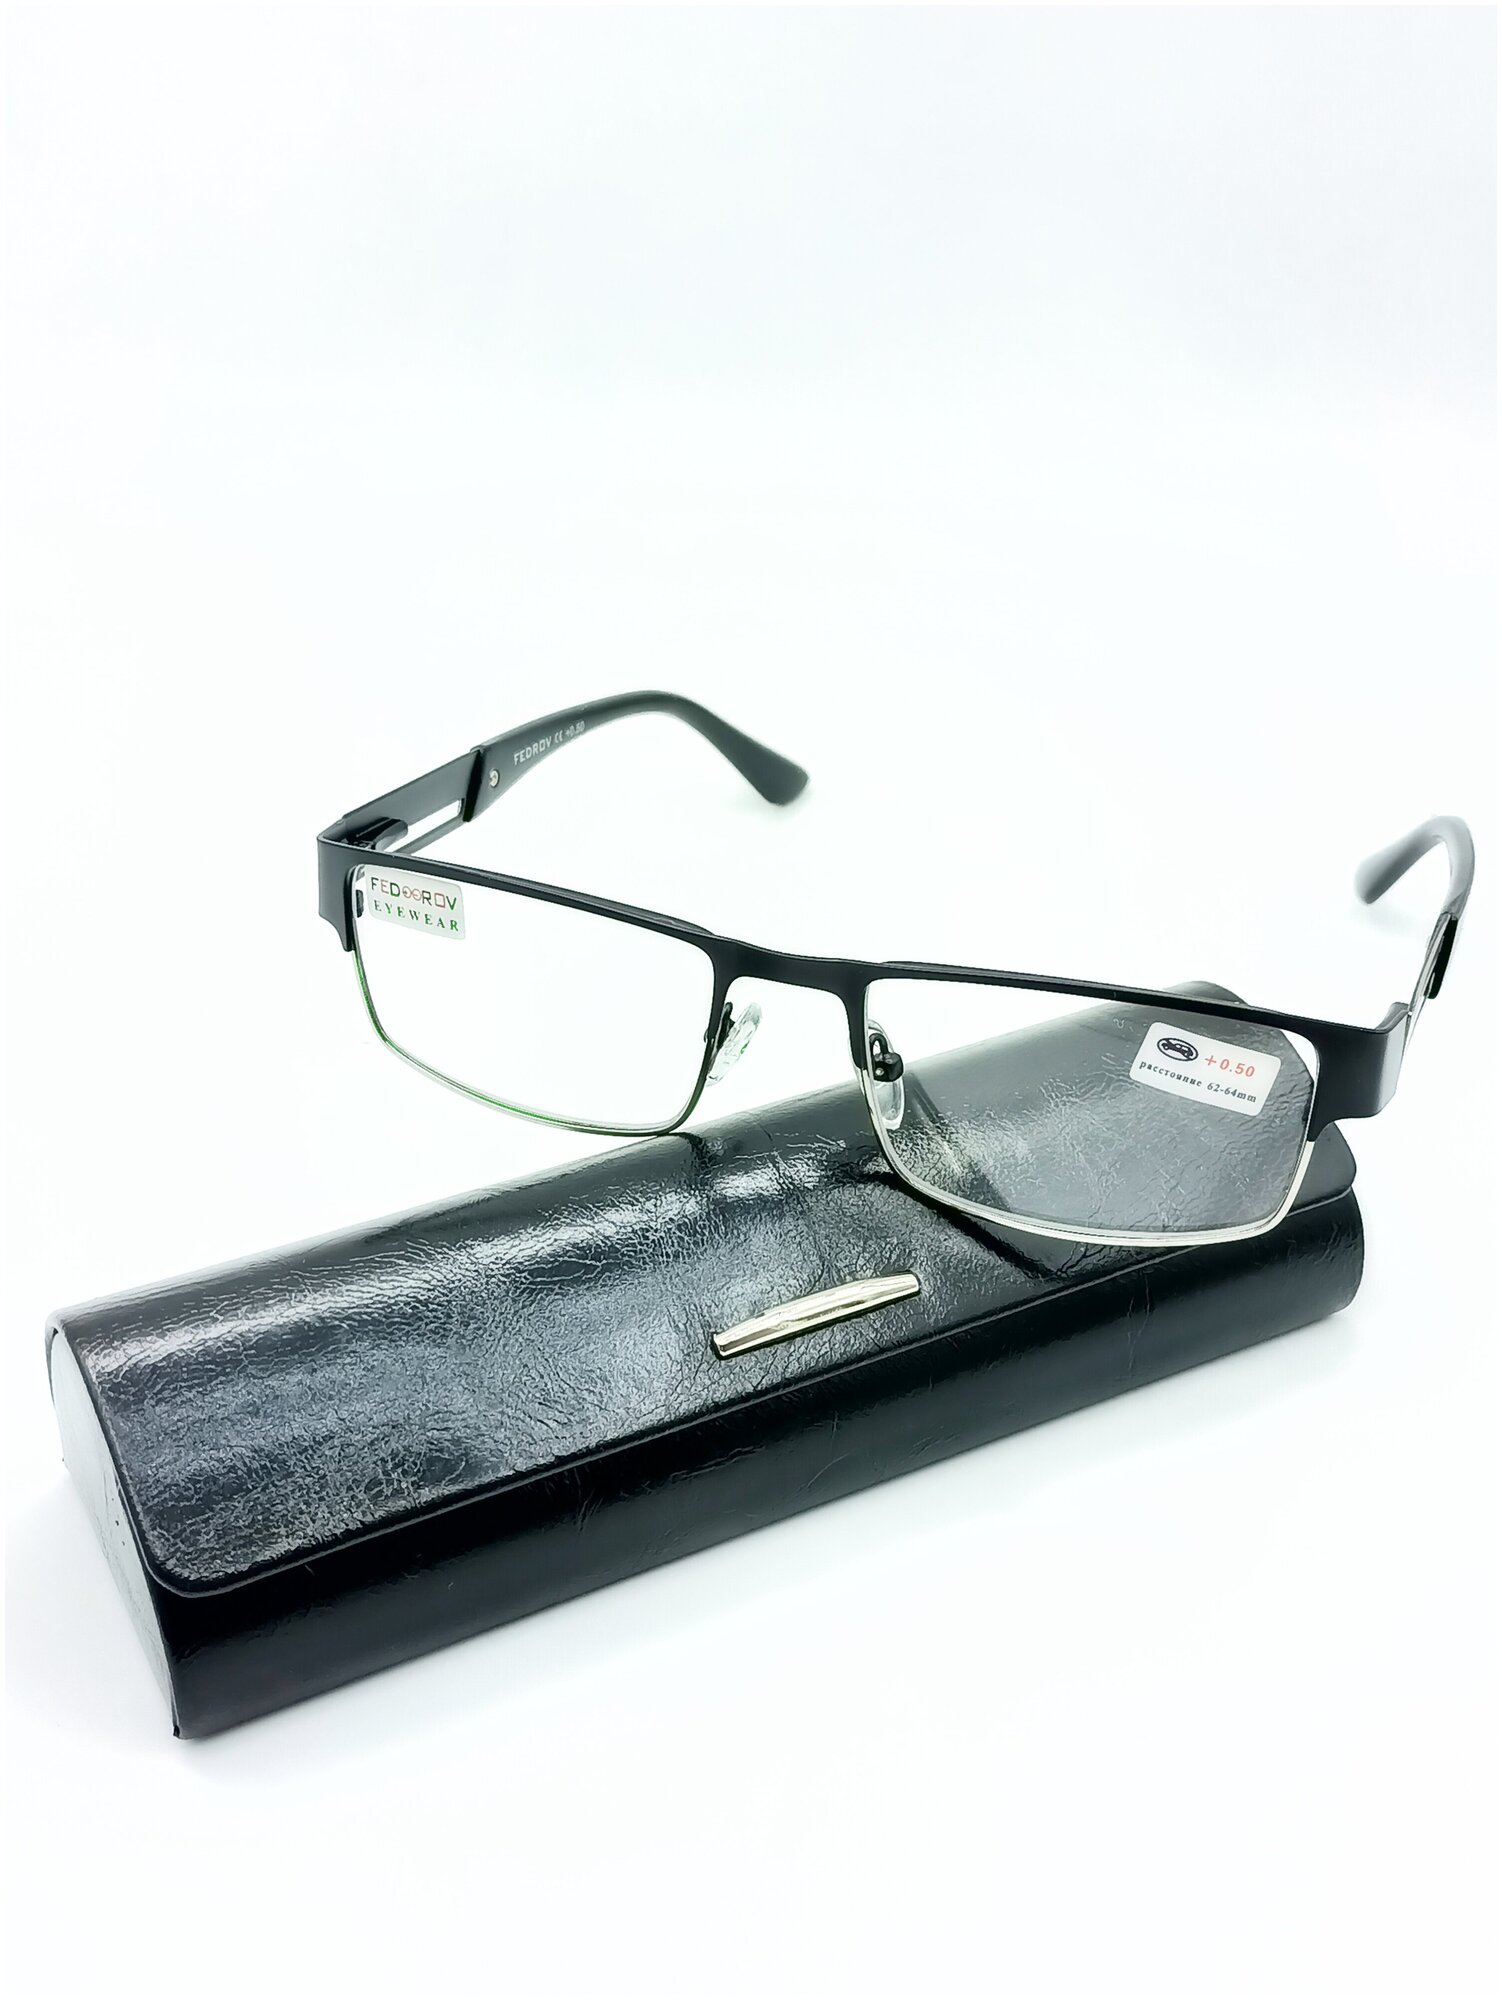 Готовые очки от зрения Fedrov ободковые цвет оправы черный +3.50 с футляром